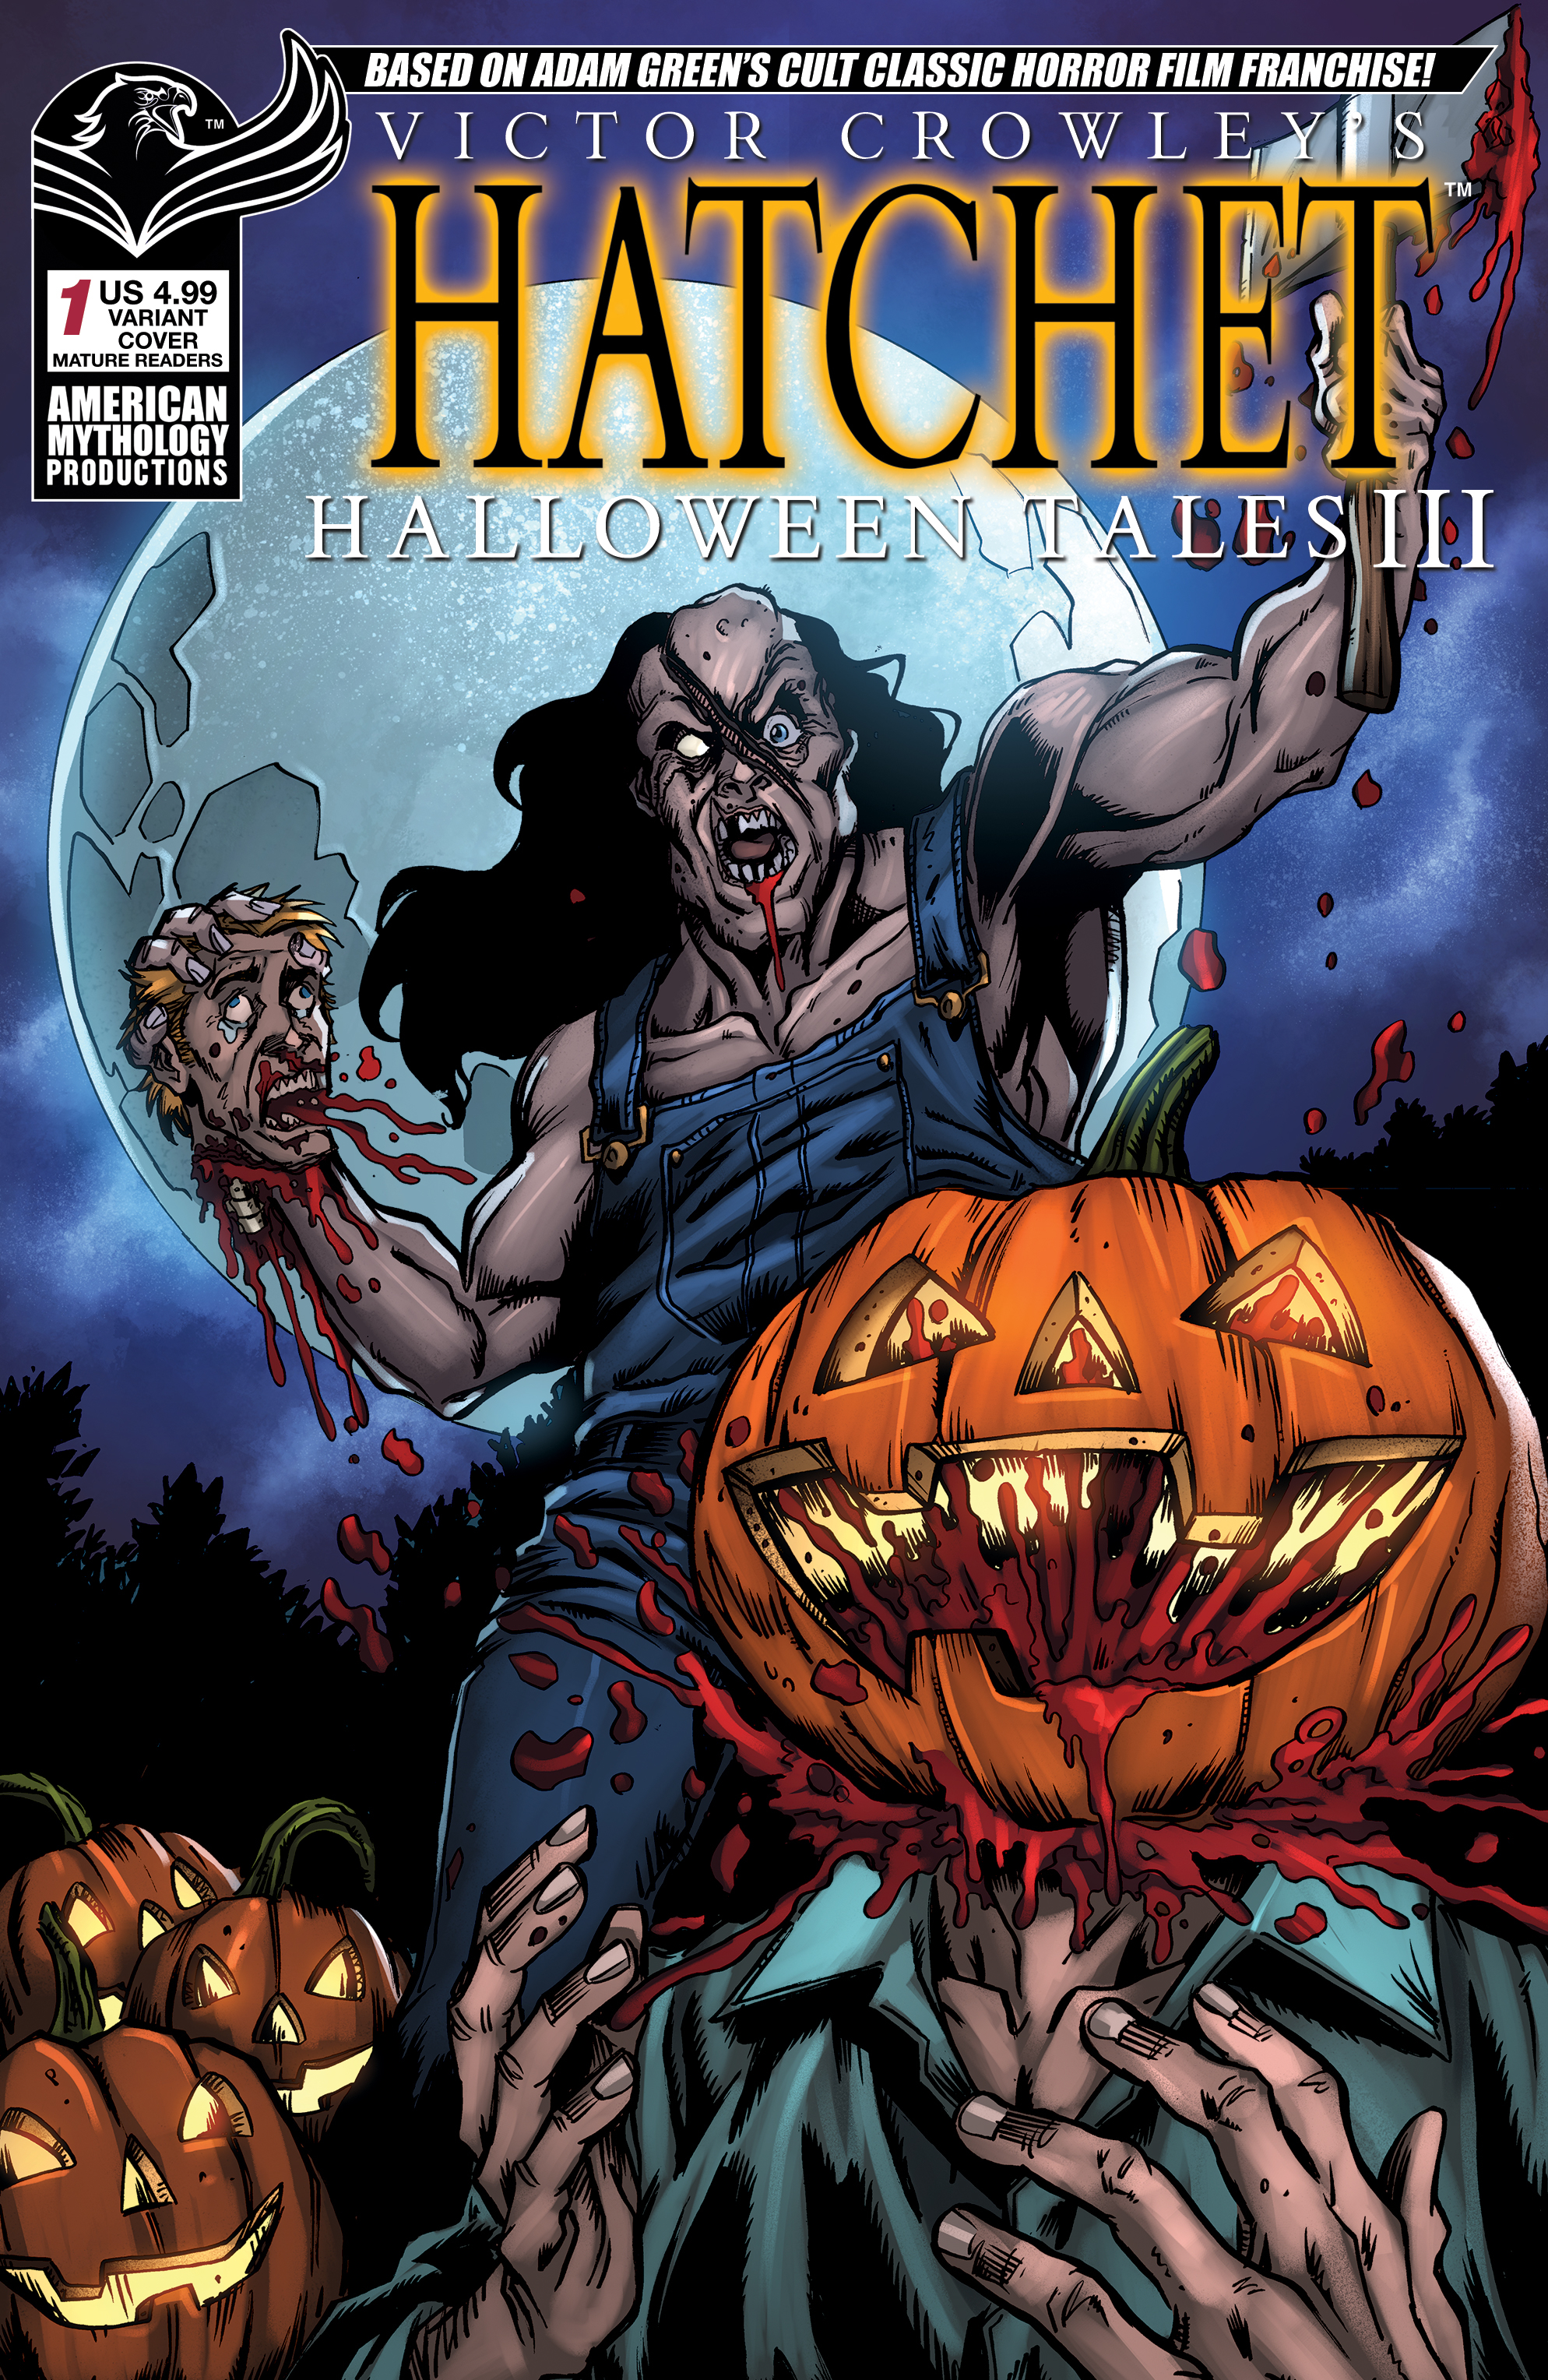 Victor Crowley Hatchet Halloween III #1 Cover C Lost Your Head (Mature)